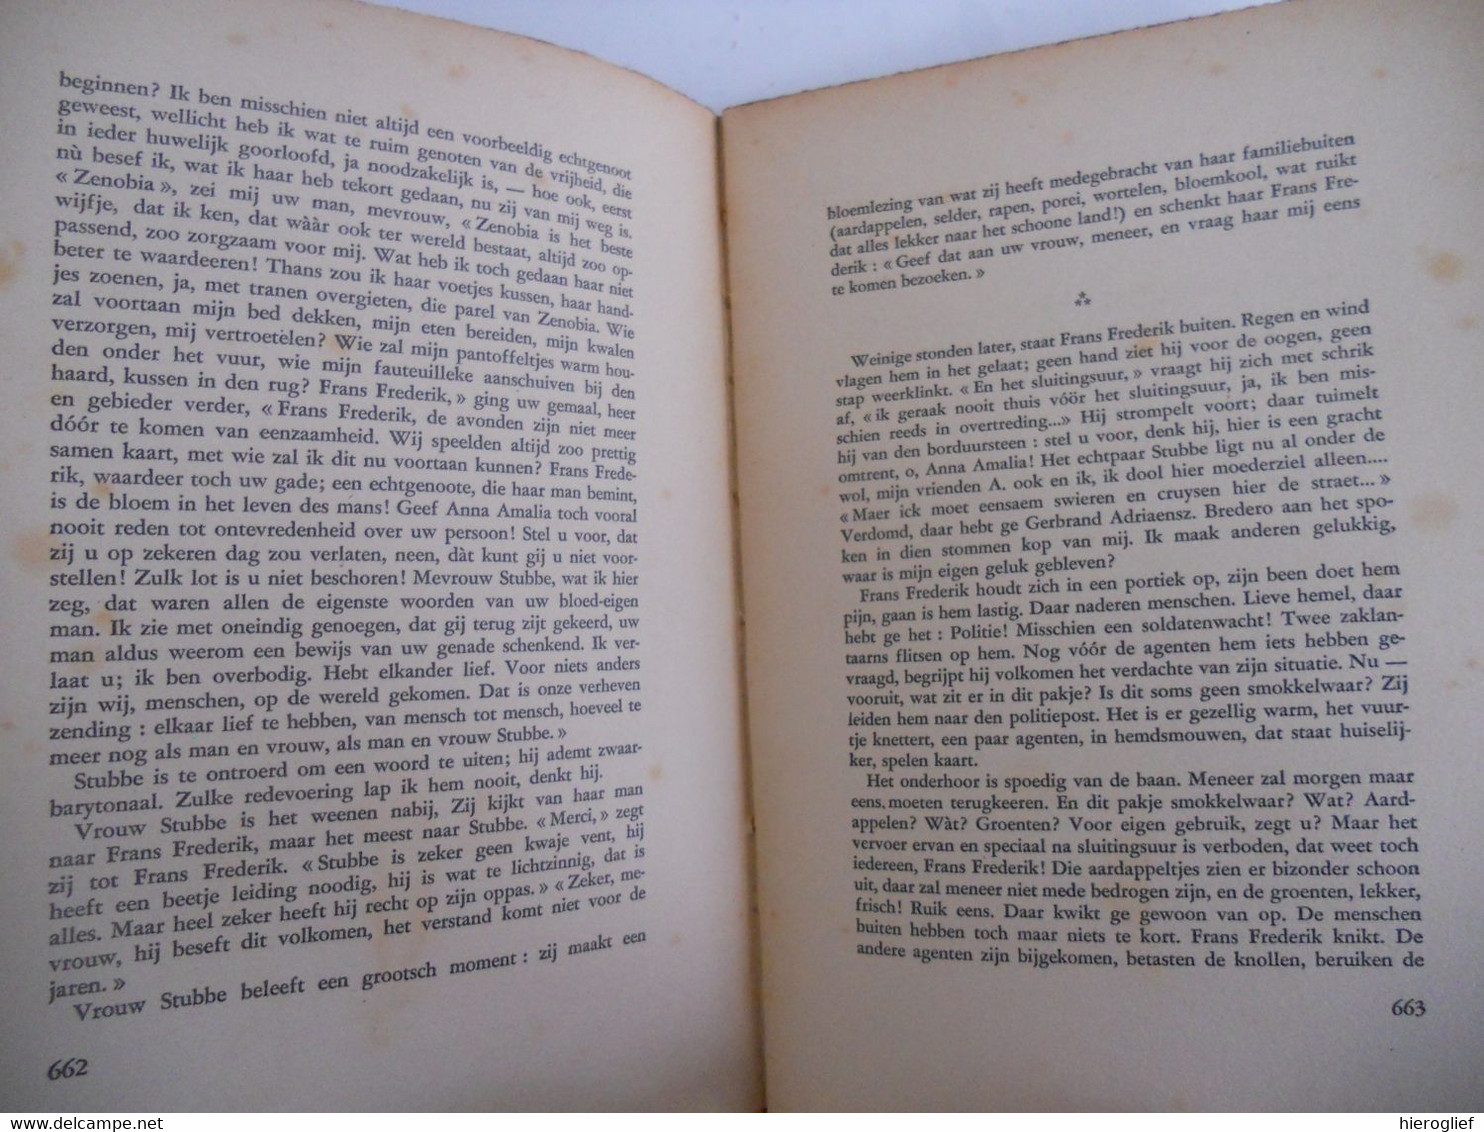 Dietsche Warande & Belfort 1941 Nr 12 Tijdschrift Voor Letterkunde En Geestesleven Minne Roelants Albe - Literature